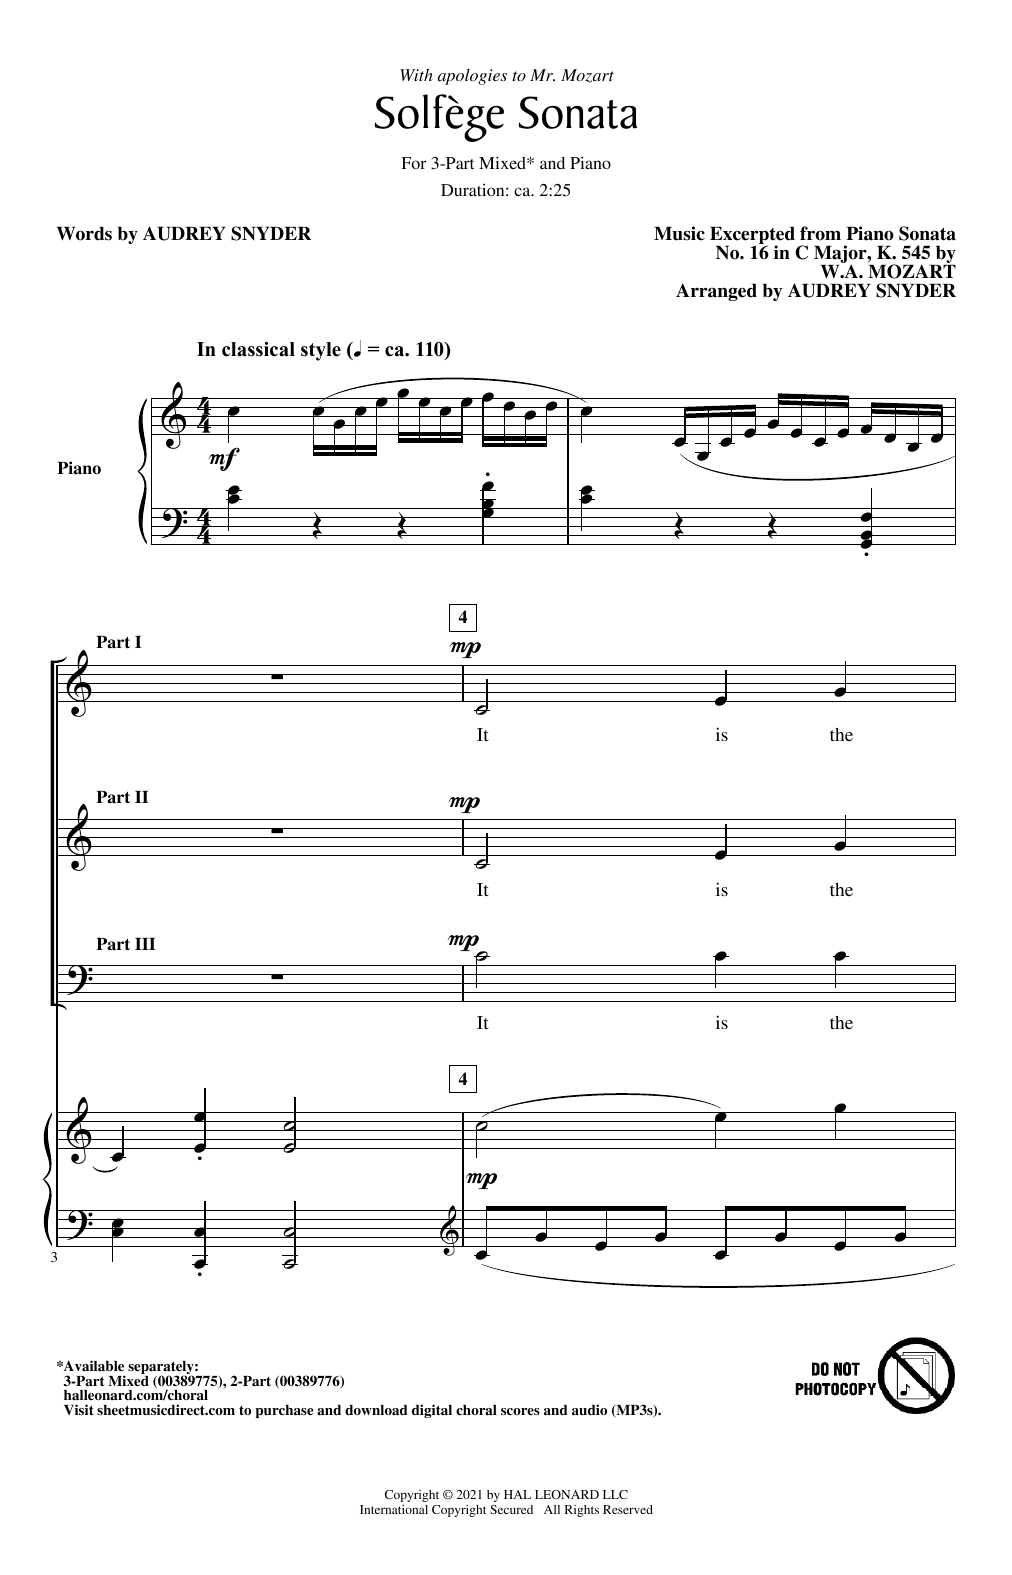 Download Audrey Snyder Solfege Sonata Sheet Music